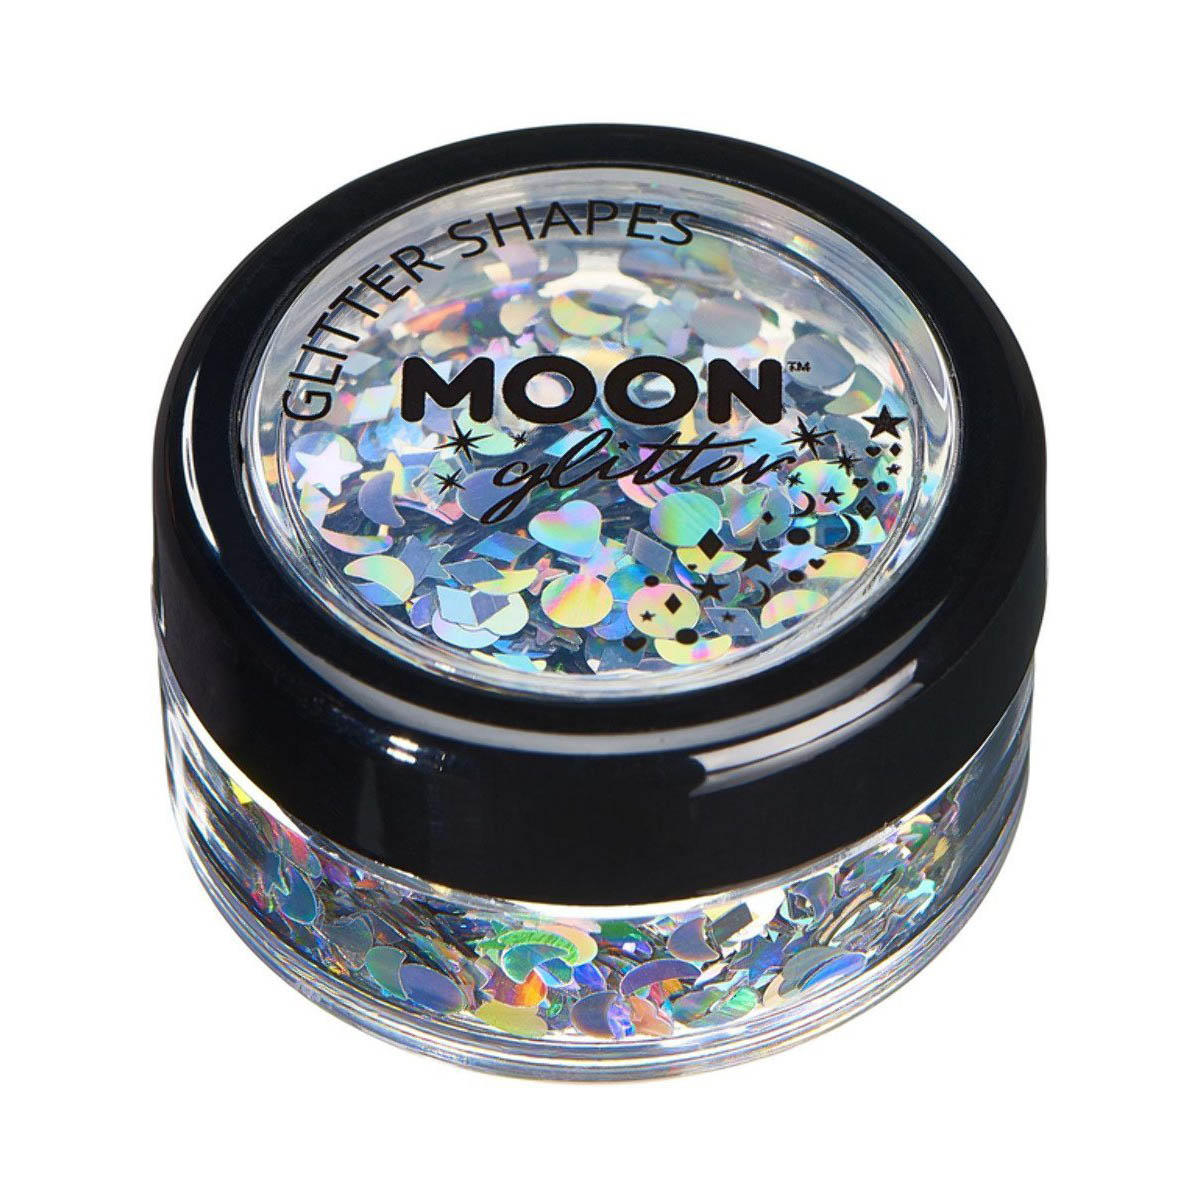 Moon glitter i burk holografiska former 3g Silver